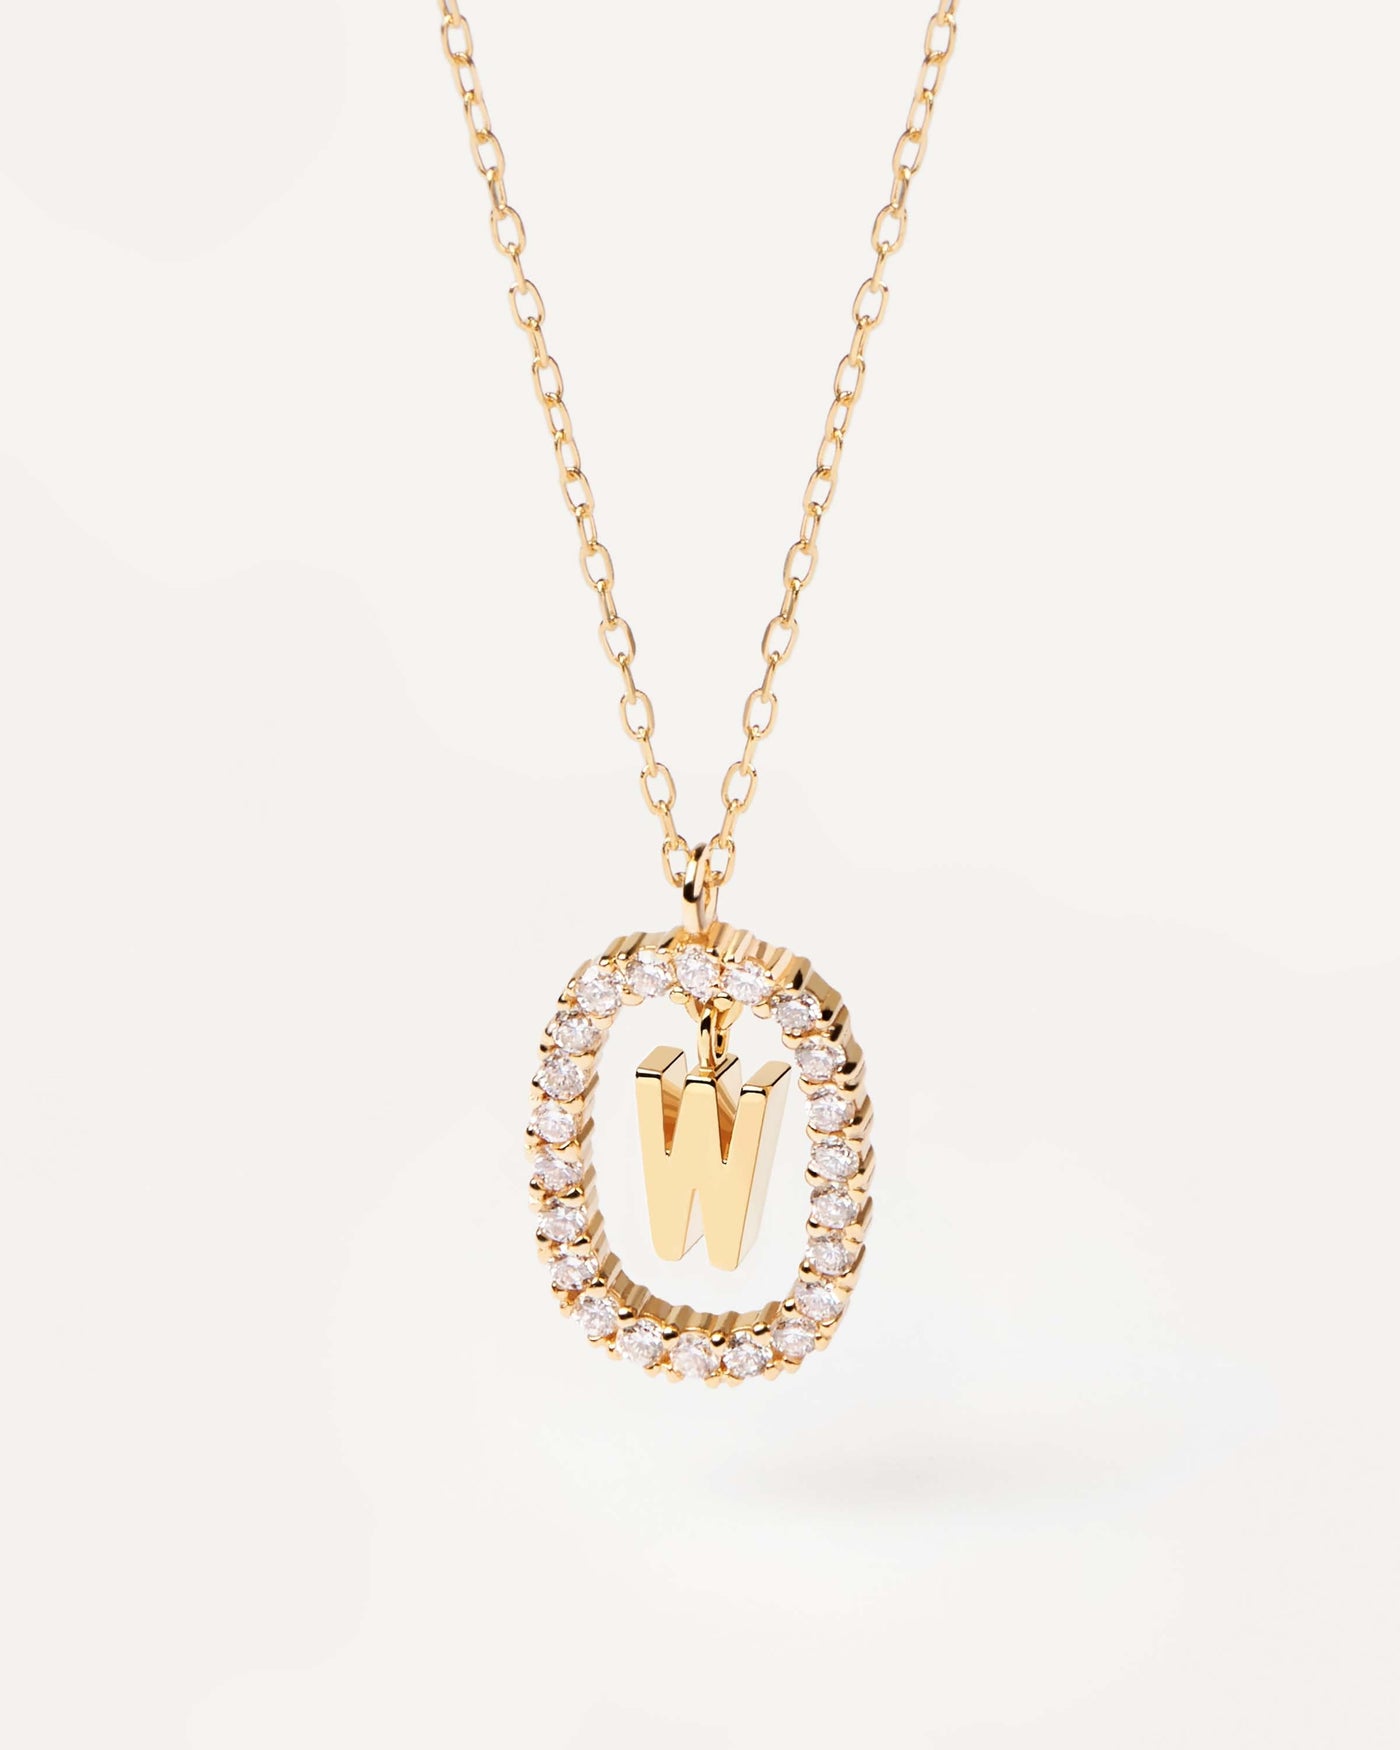 GoldHalskette mit Diamanten Buchstabe W. Erstes W-Halskette in massivem Gelbgold, umkreist von 0,33 Karat-Labor-Diamanten. Erhalten Sie die neuesten Produkte von PDPAOLA. Geben Sie Ihre Bestellung sicher auf und erhalten Sie diesen Bestseller.